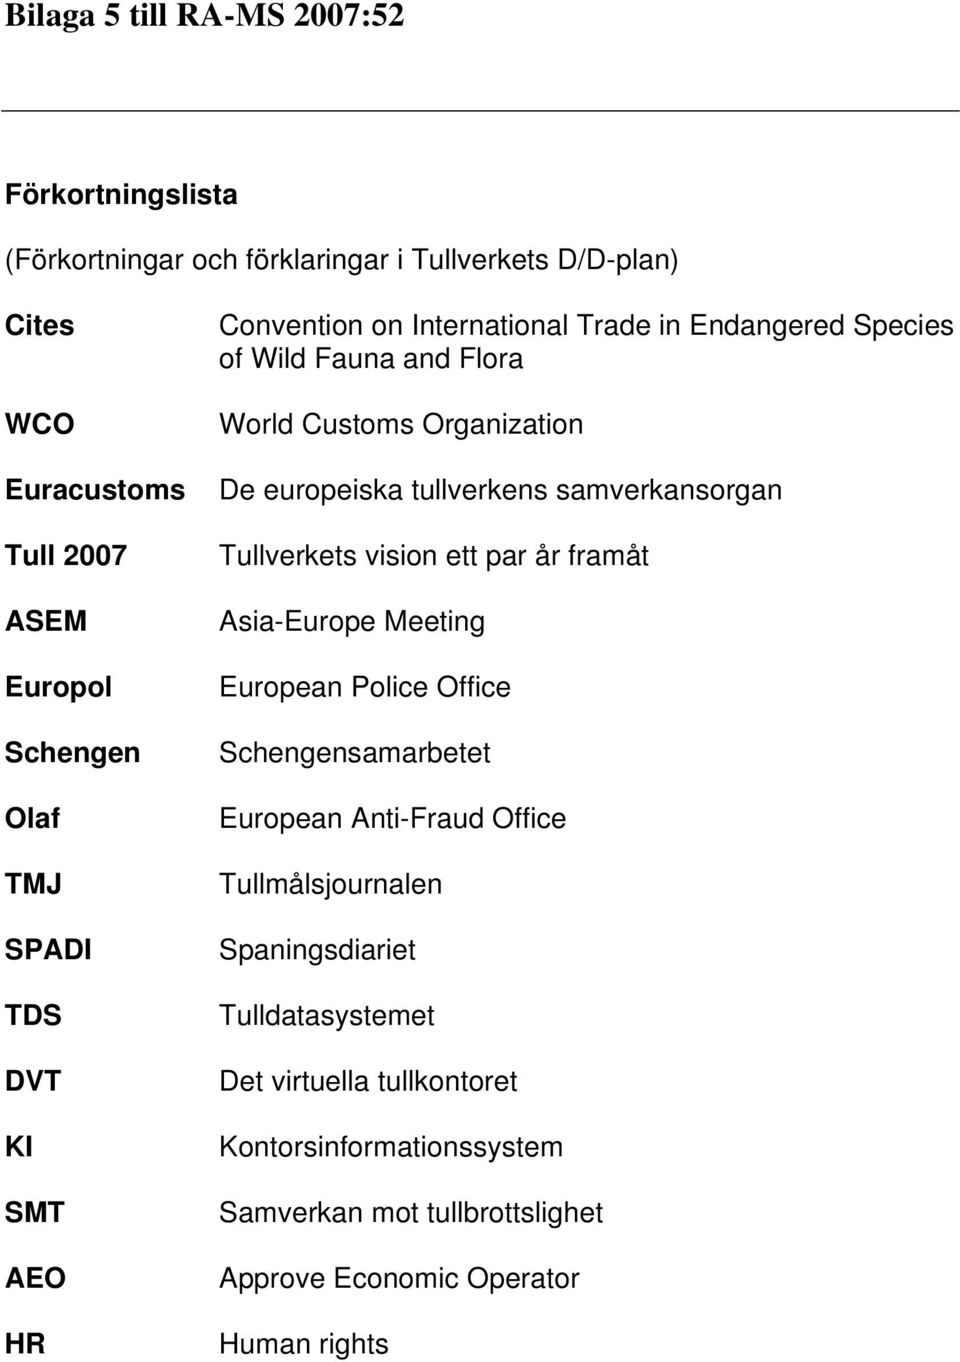 tullverkens samverkansorgan Tullverkets vision ett par år framåt Asia-Europe Meeting European Police Office Schengensamarbetet European Anti-Fraud Office